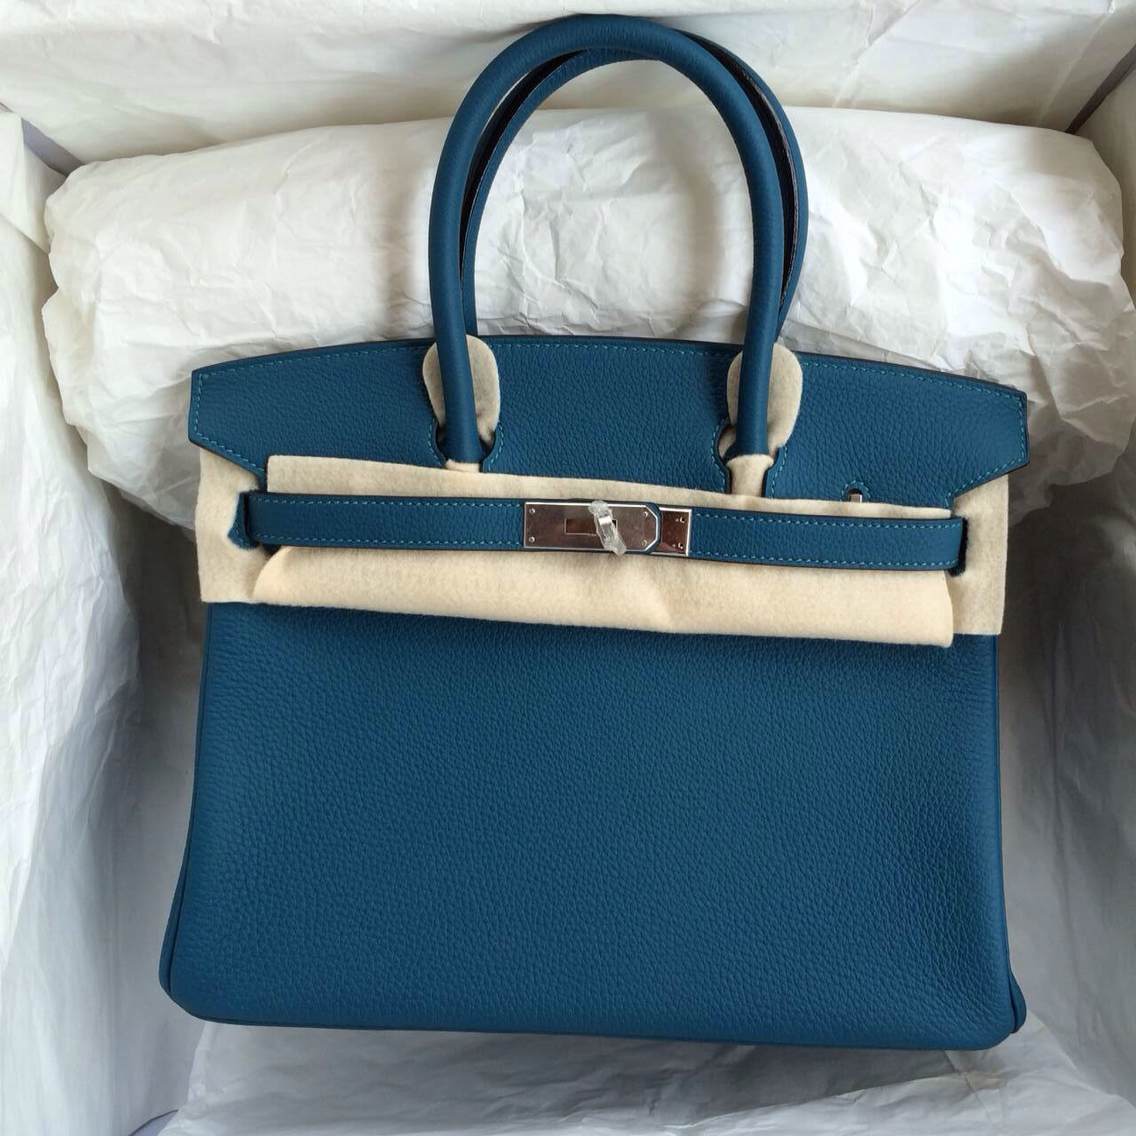 Hermes Birkin Bag 30cm S7 Blue De Galice France Togo Leather Silver Hardware